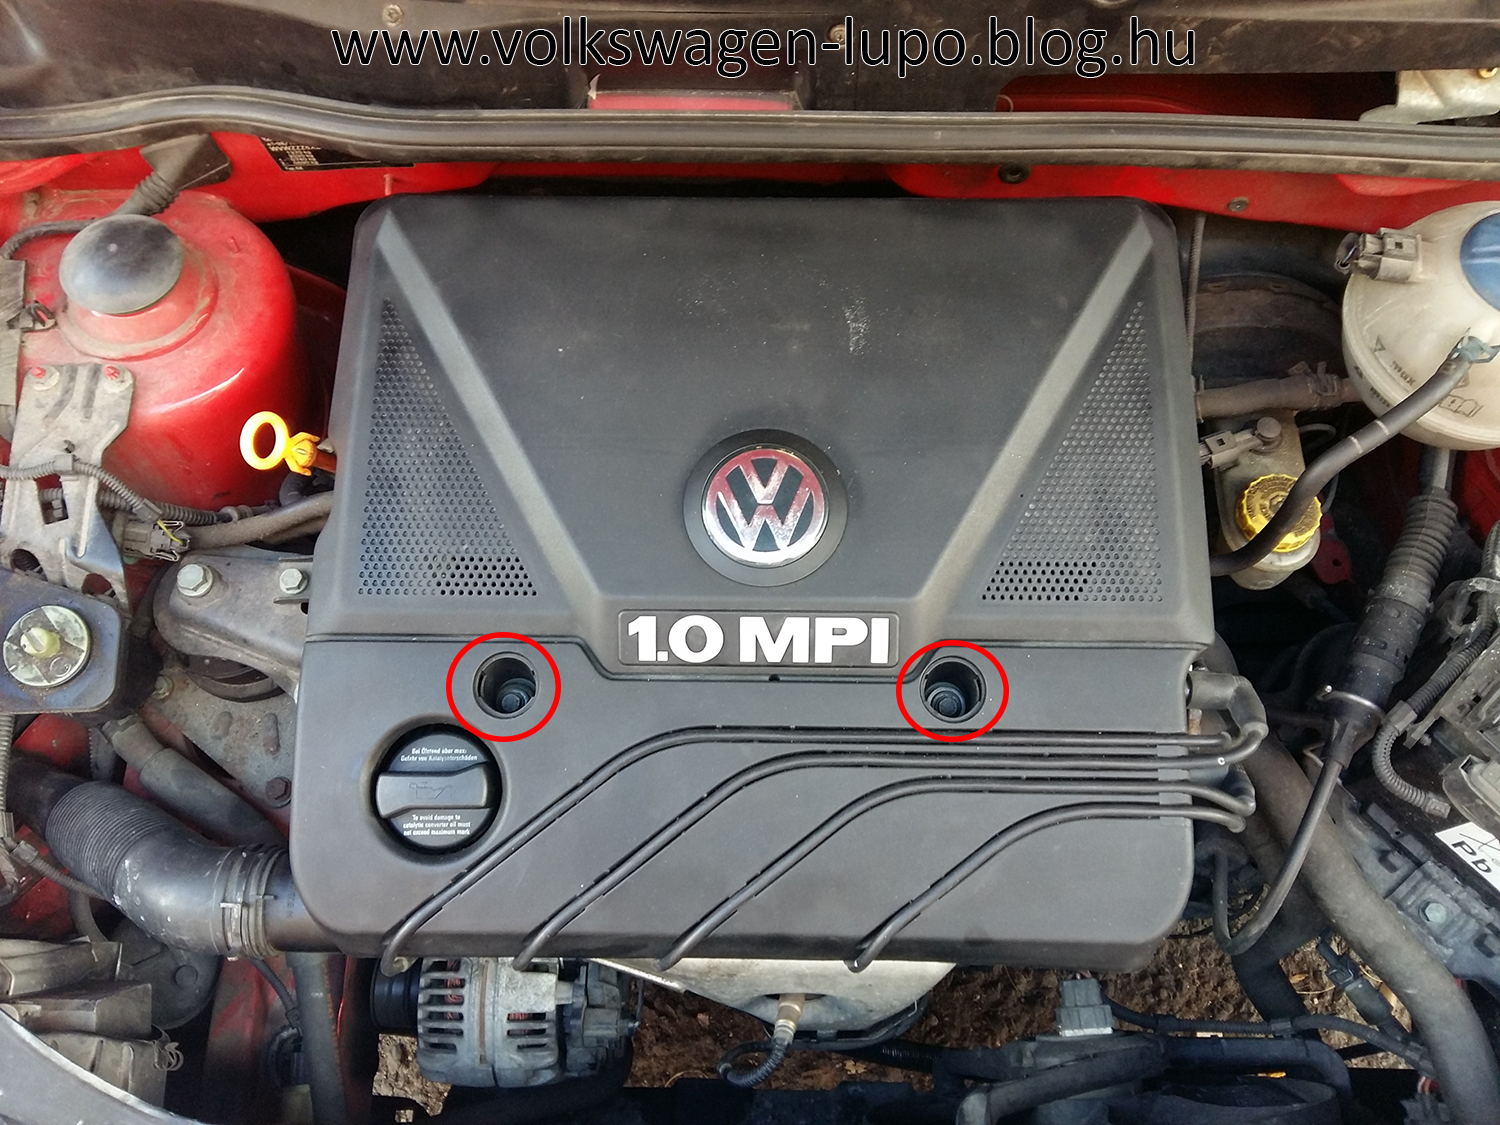 VW Lupo Polo 1.0 légszűrő betét cseréje Volkswagen Lupo